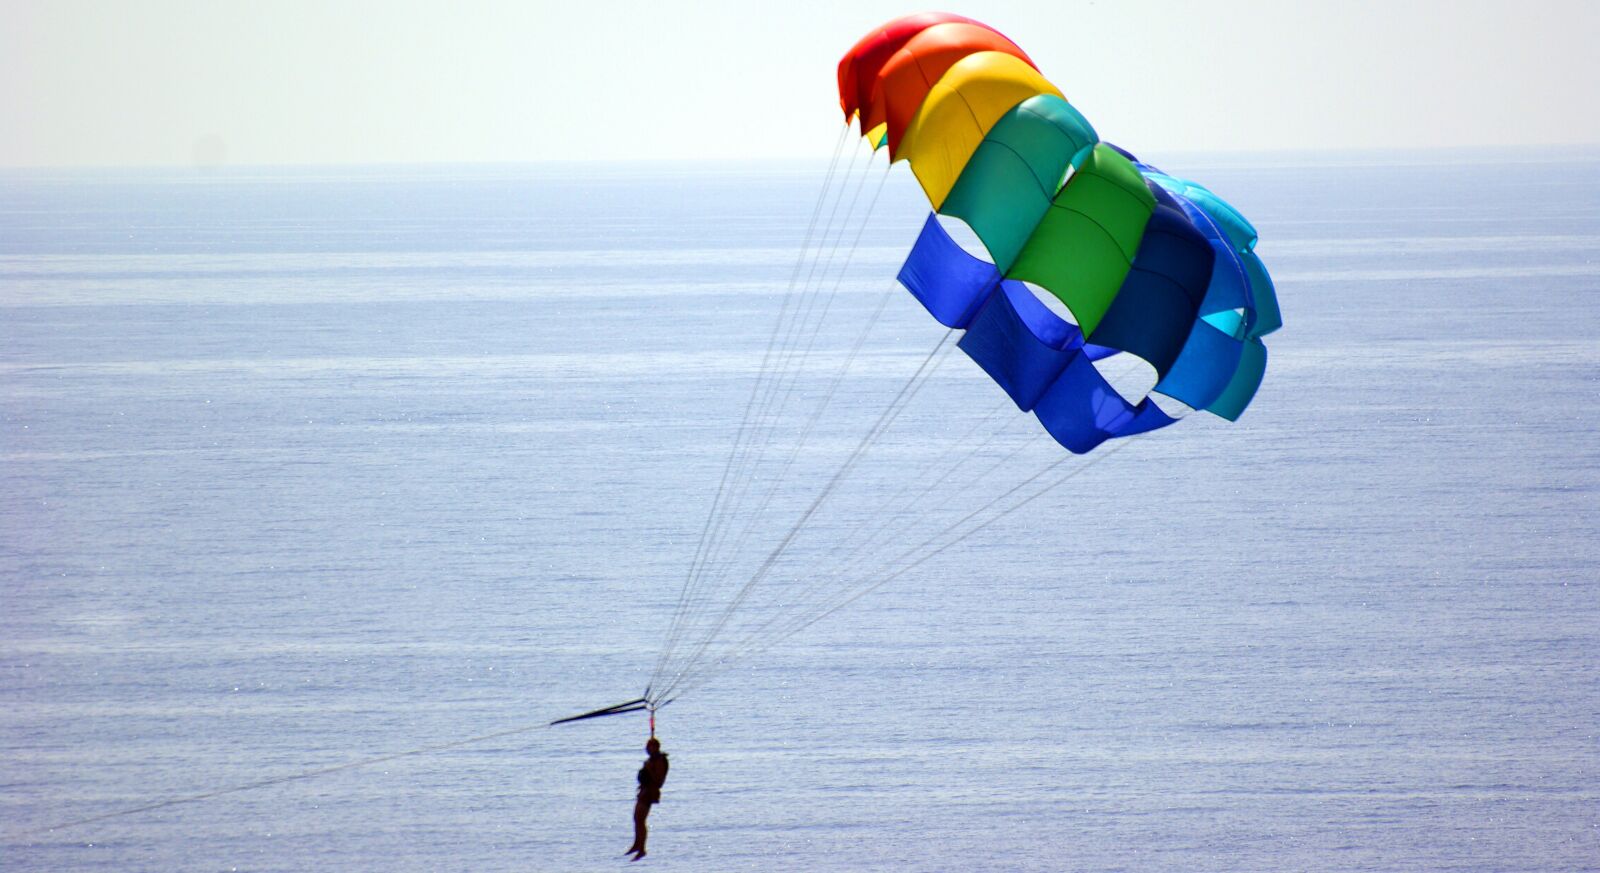 Sony Alpha DSLR-A350 sample photo. Parachute, sea, sky photography